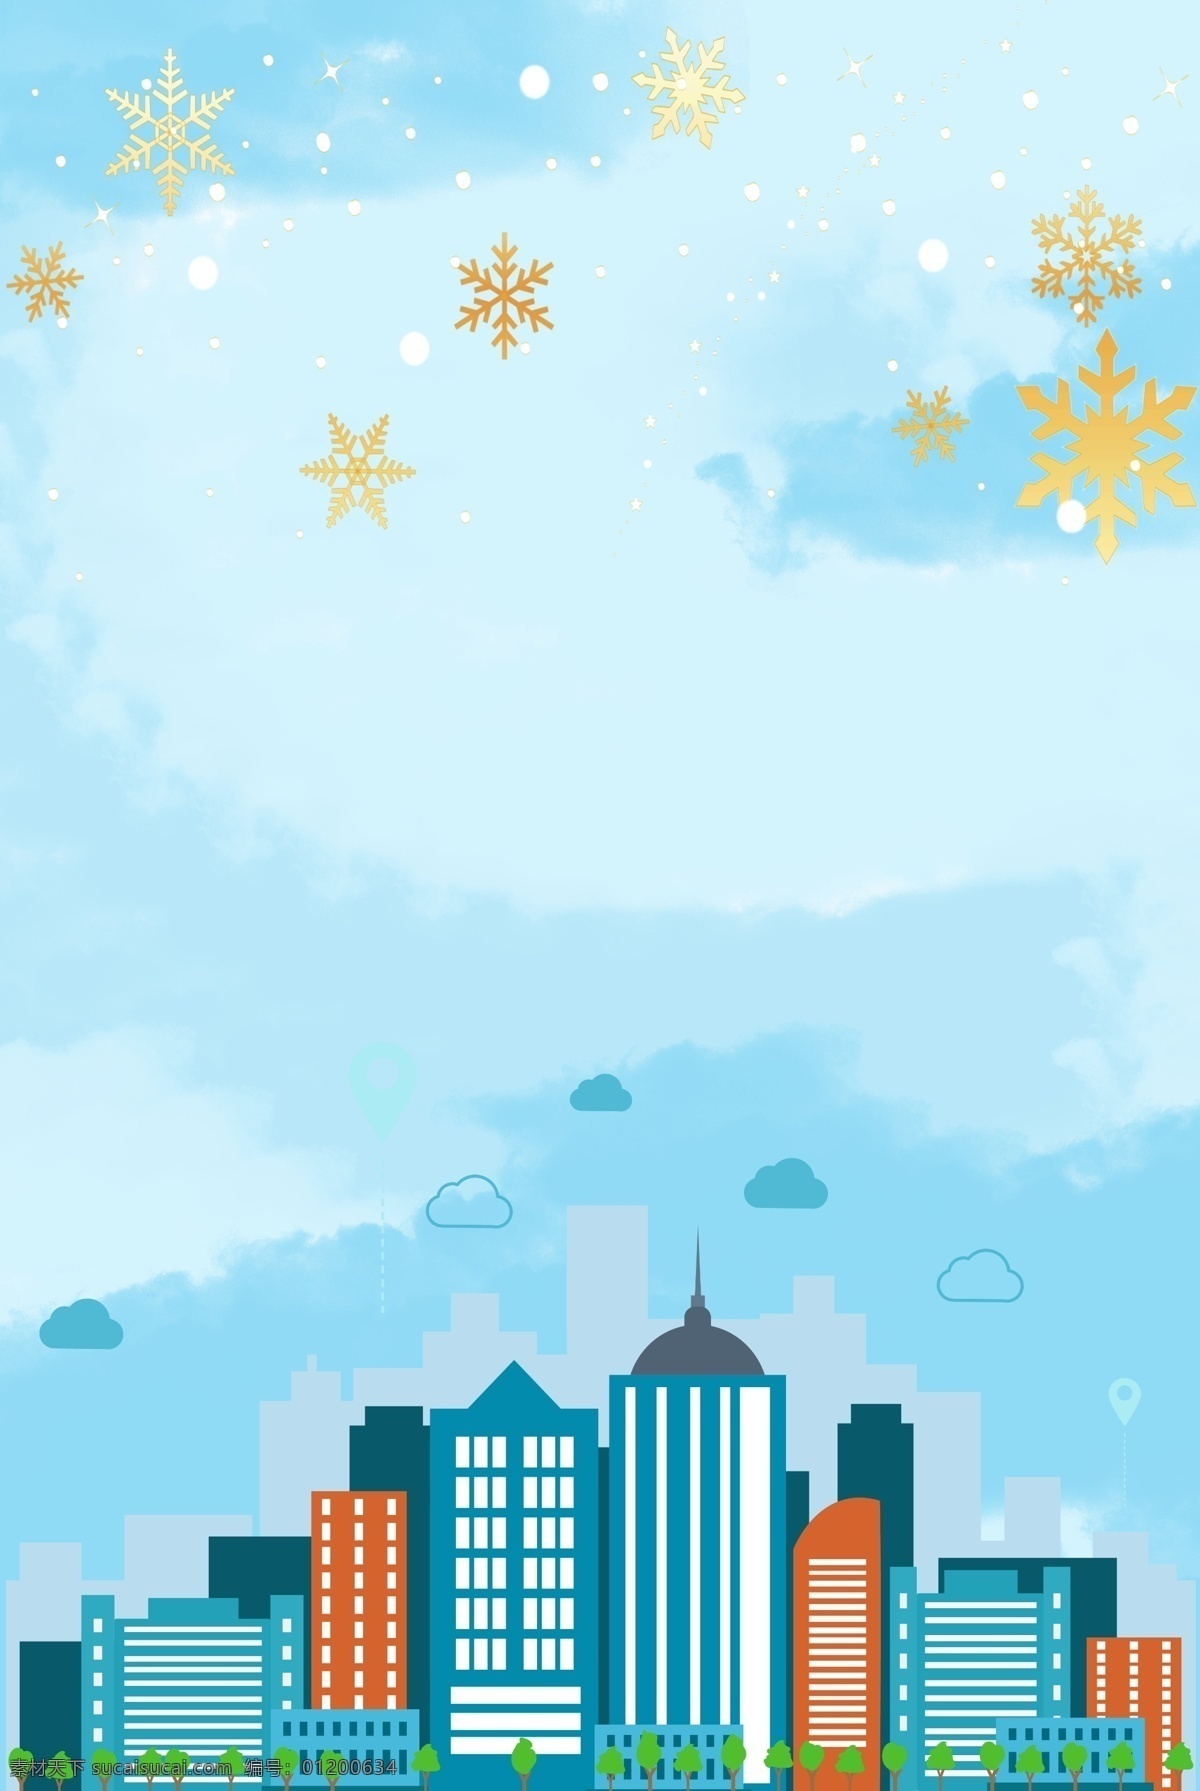 城市 高楼 清新 背景 雪花 蓝天 海报 简约 风景 卡通